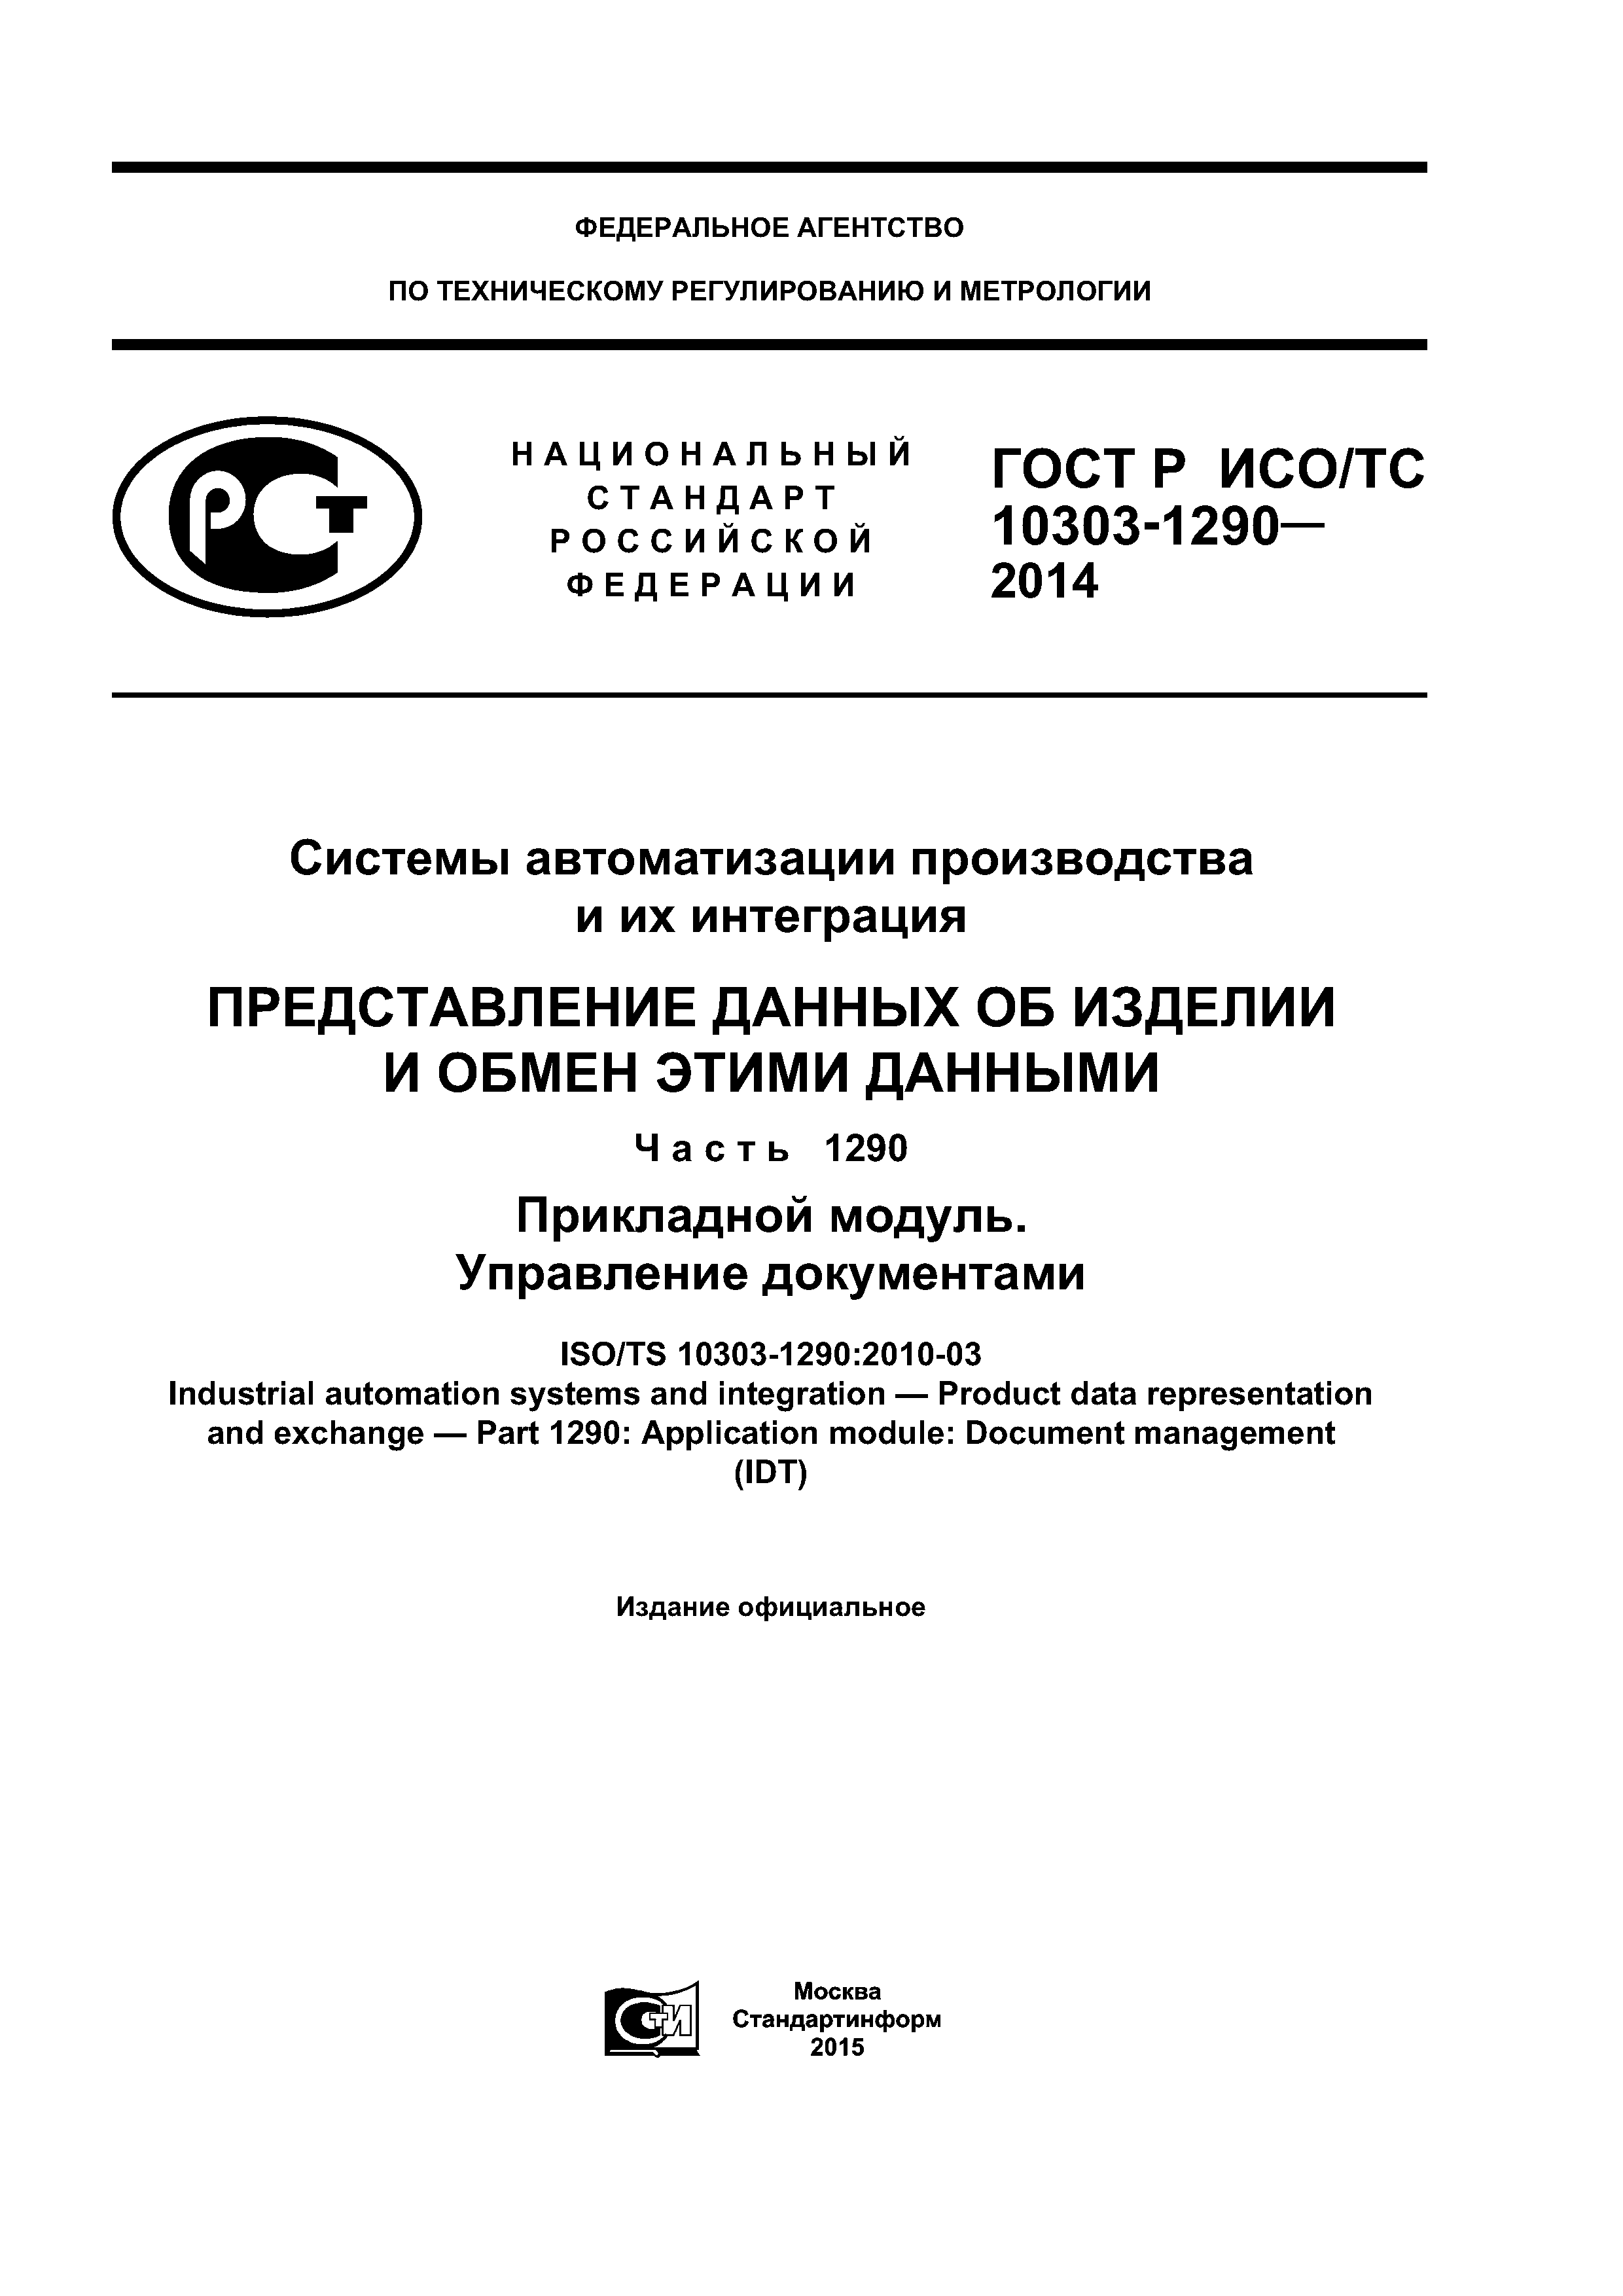 ГОСТ Р ИСО/ТС 10303-1290-2014